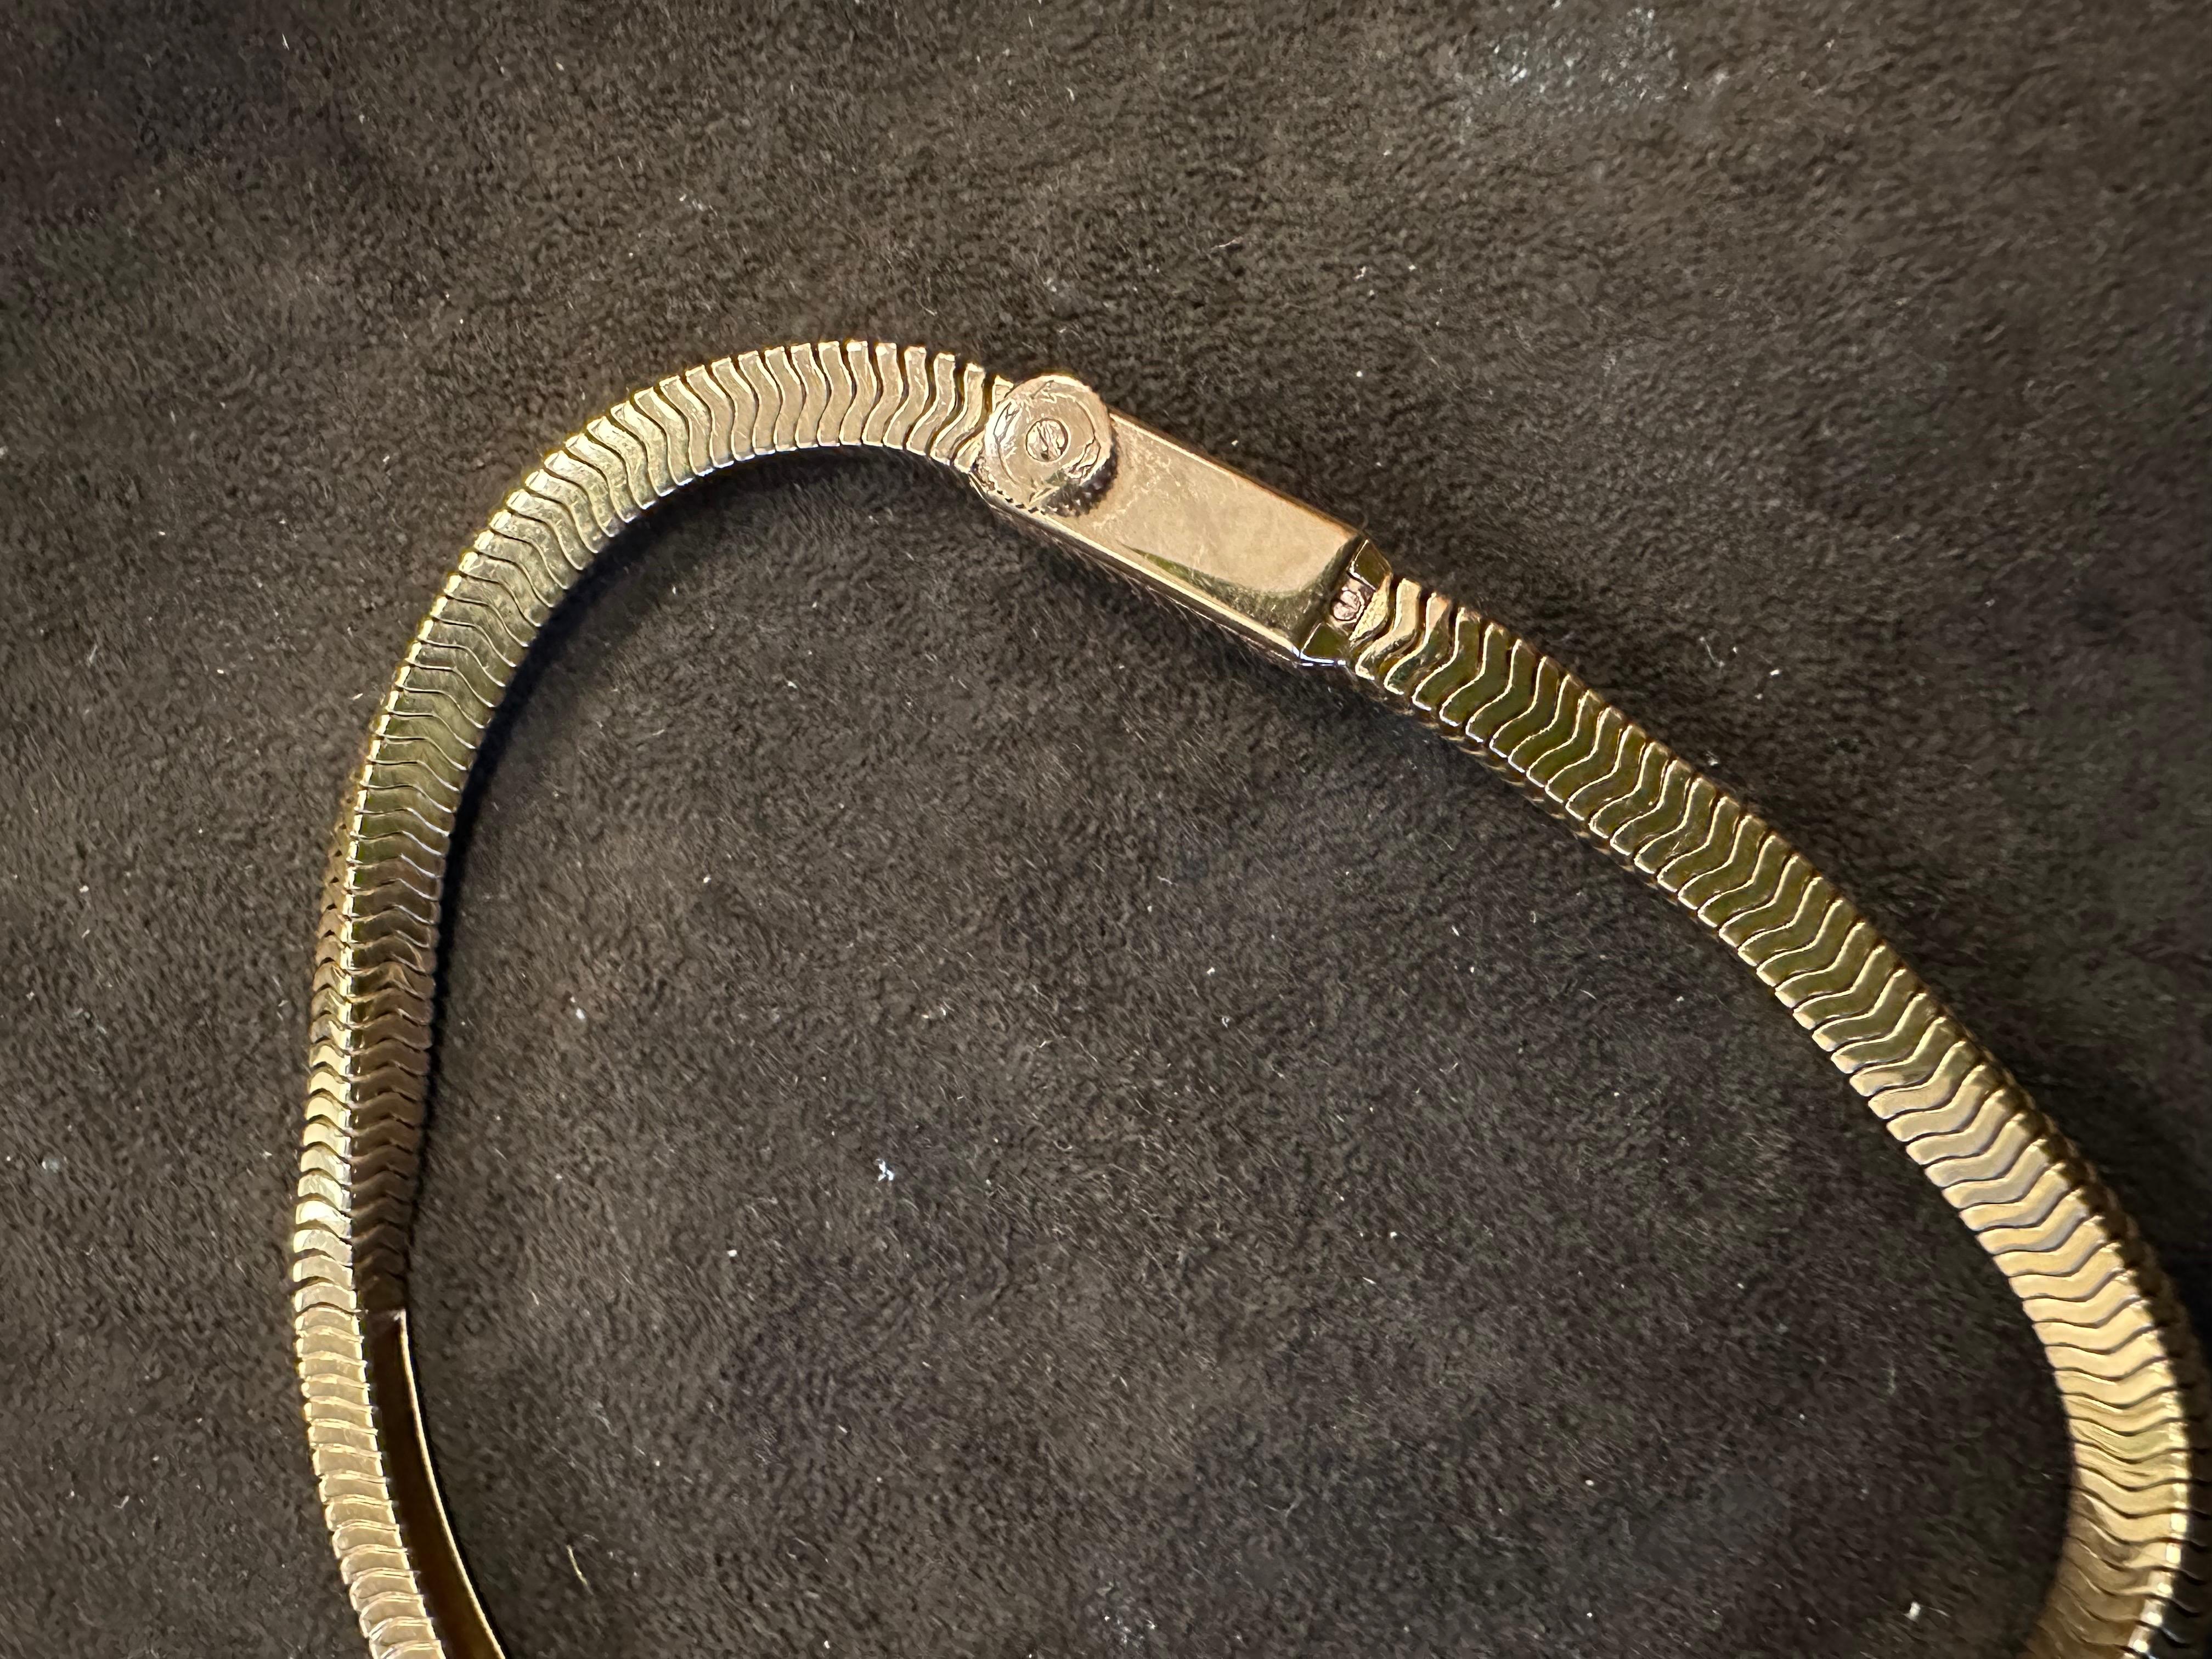 Mouvement mécanique, montre-bracelet rétro à chaîne en or rose 18 carats de Jaeger-LeCoultre. Le calibre 101, leur plus petit mouvement à remontoir, a été introduit pour la première fois en 1929. Boucle déployante.